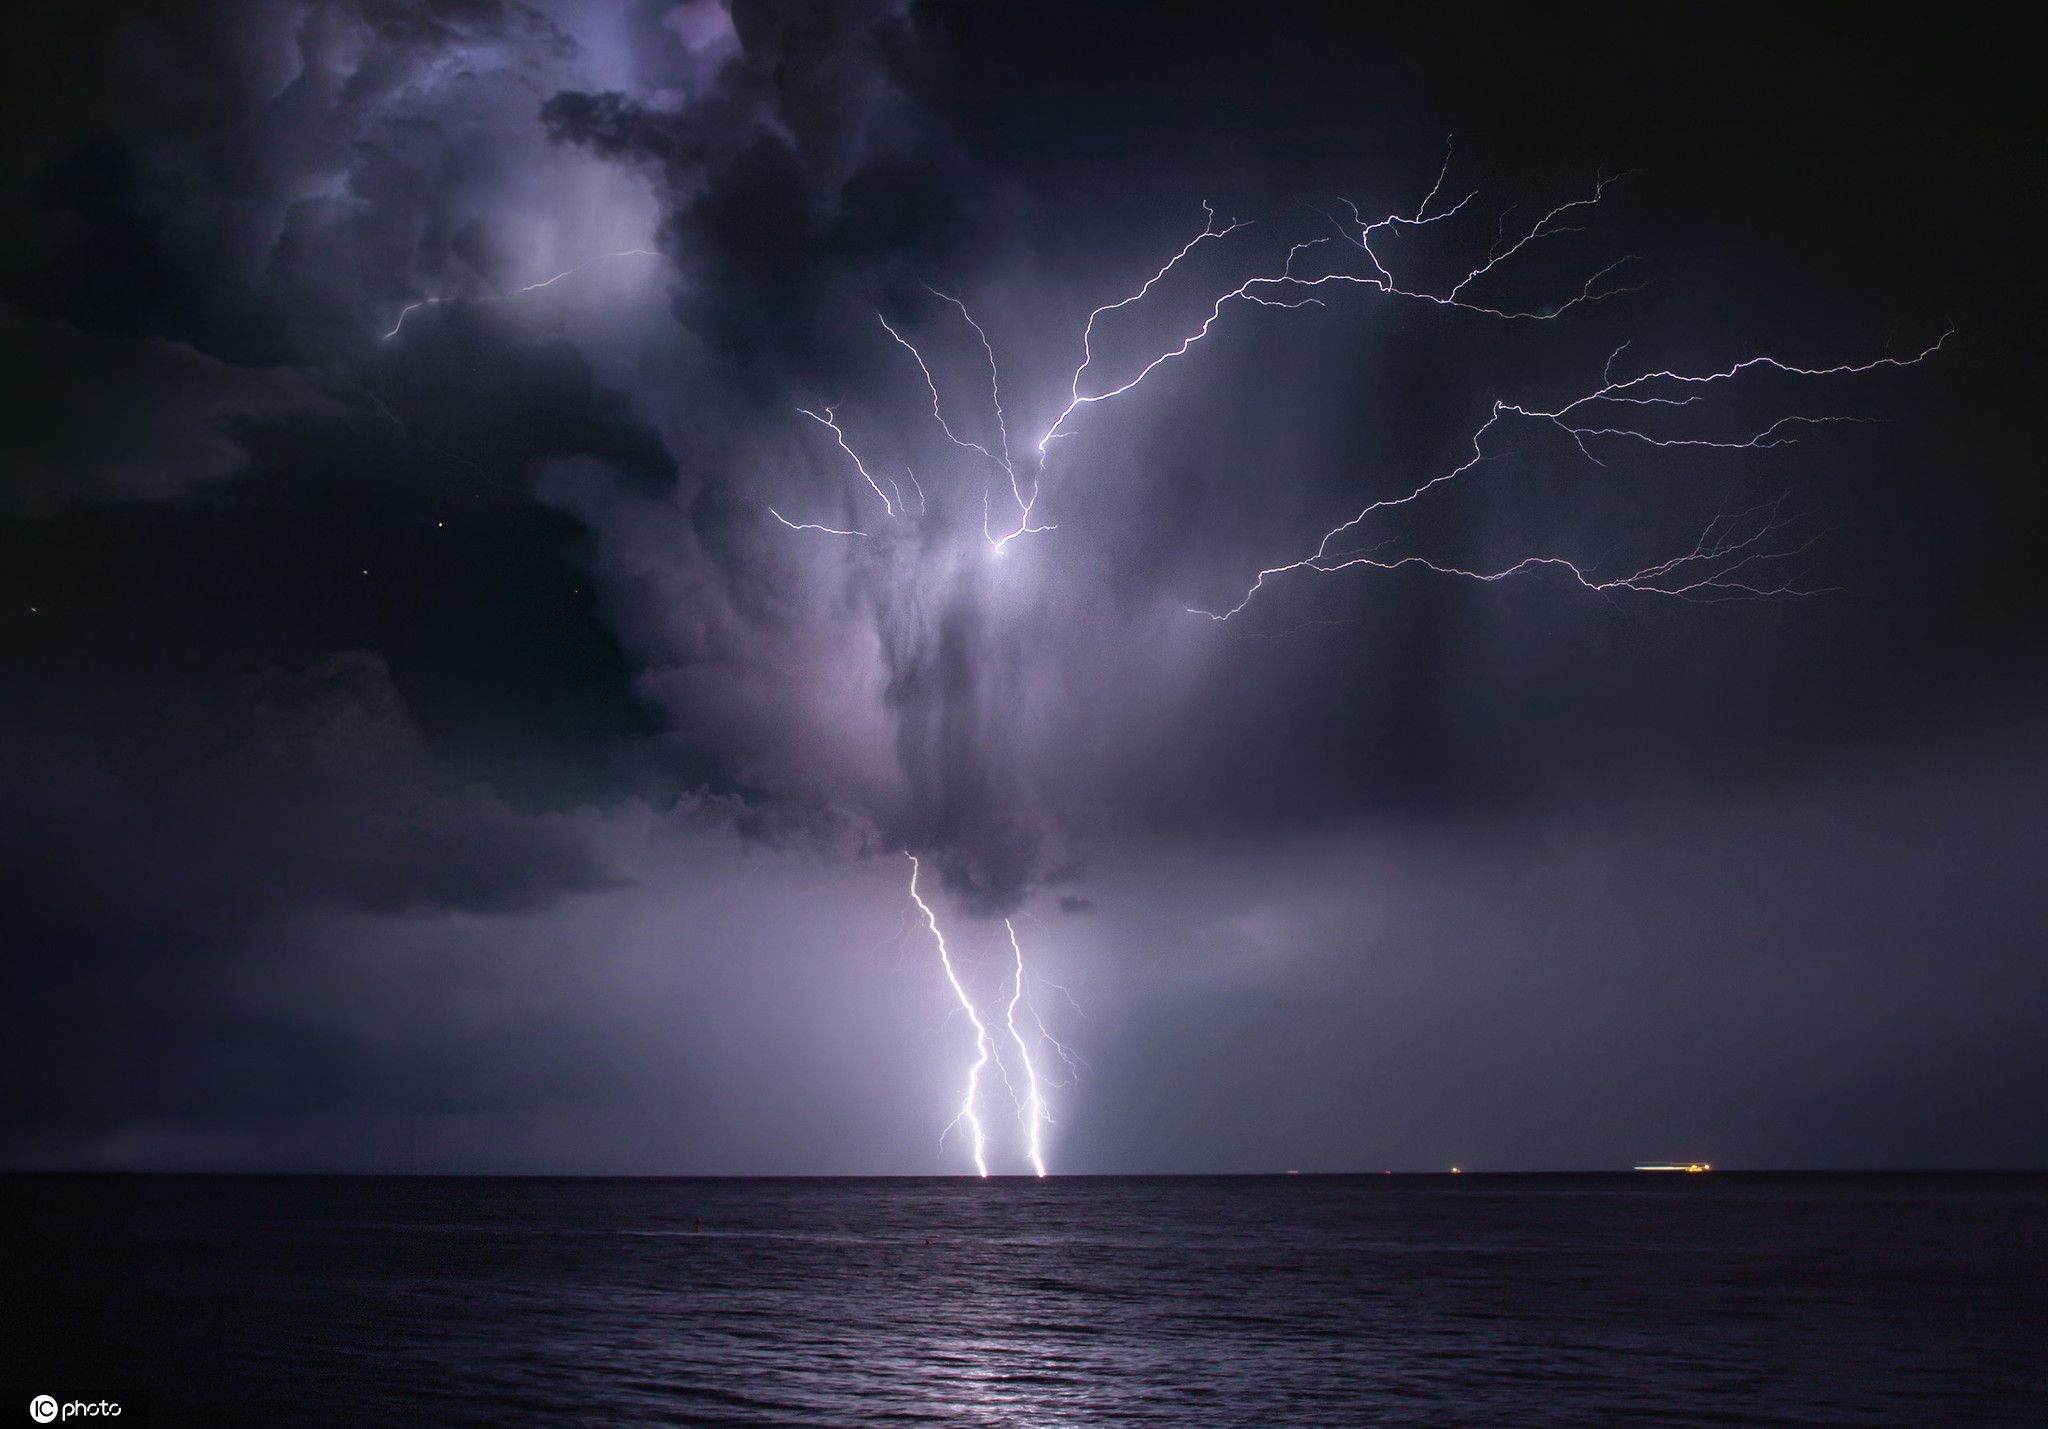 意大利女子追逐雷暴 拍摄闪电击中海平面震撼画面